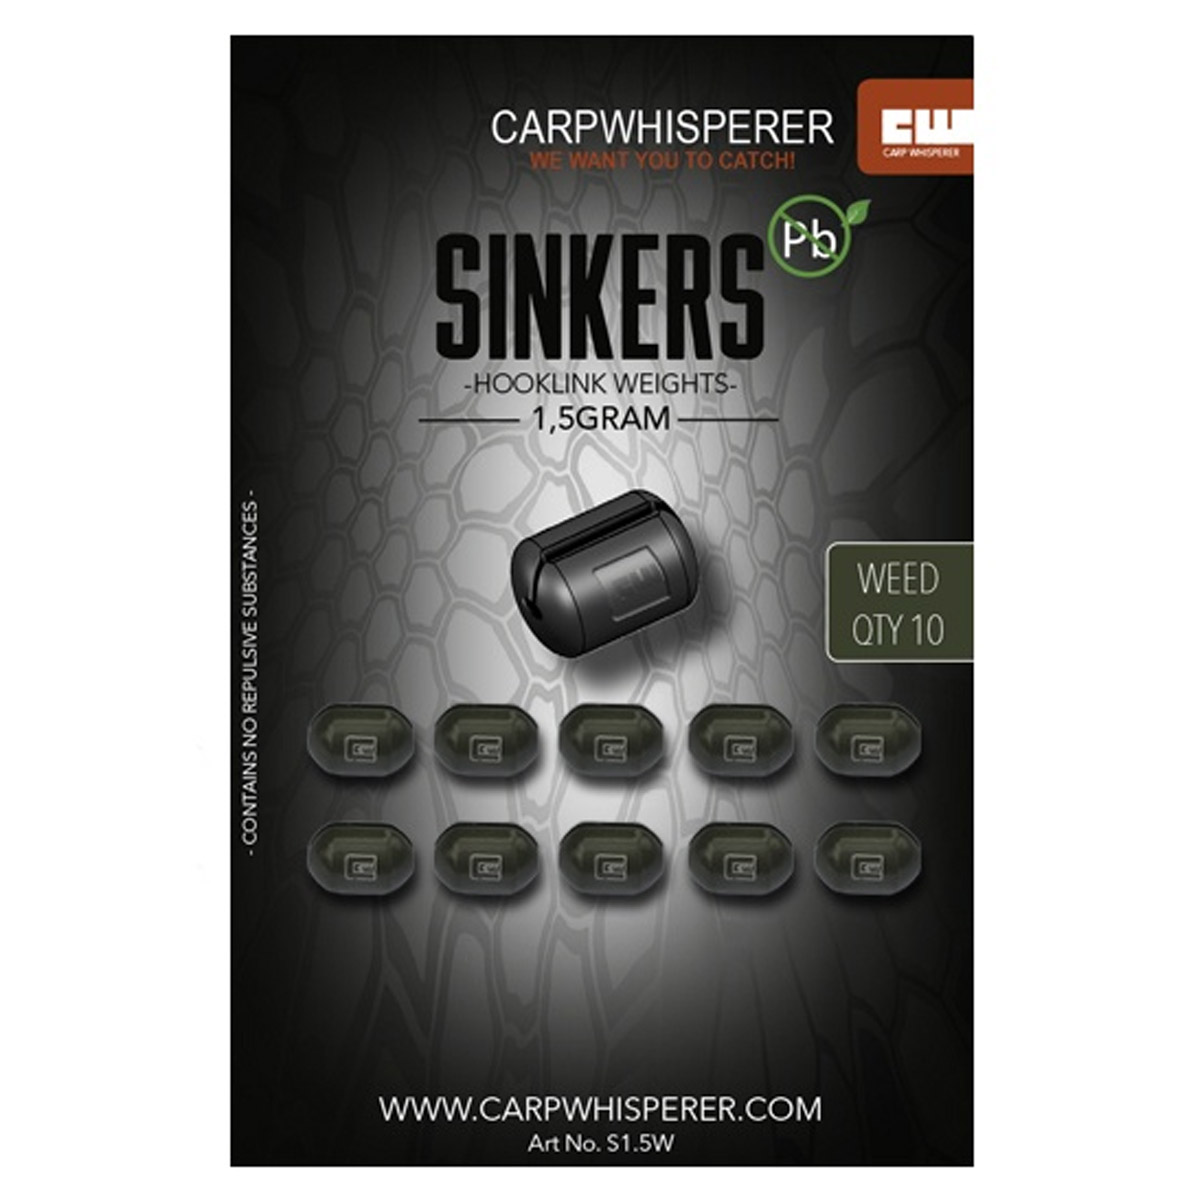 Carp Whisperer - Sinkers Quick Change Silt